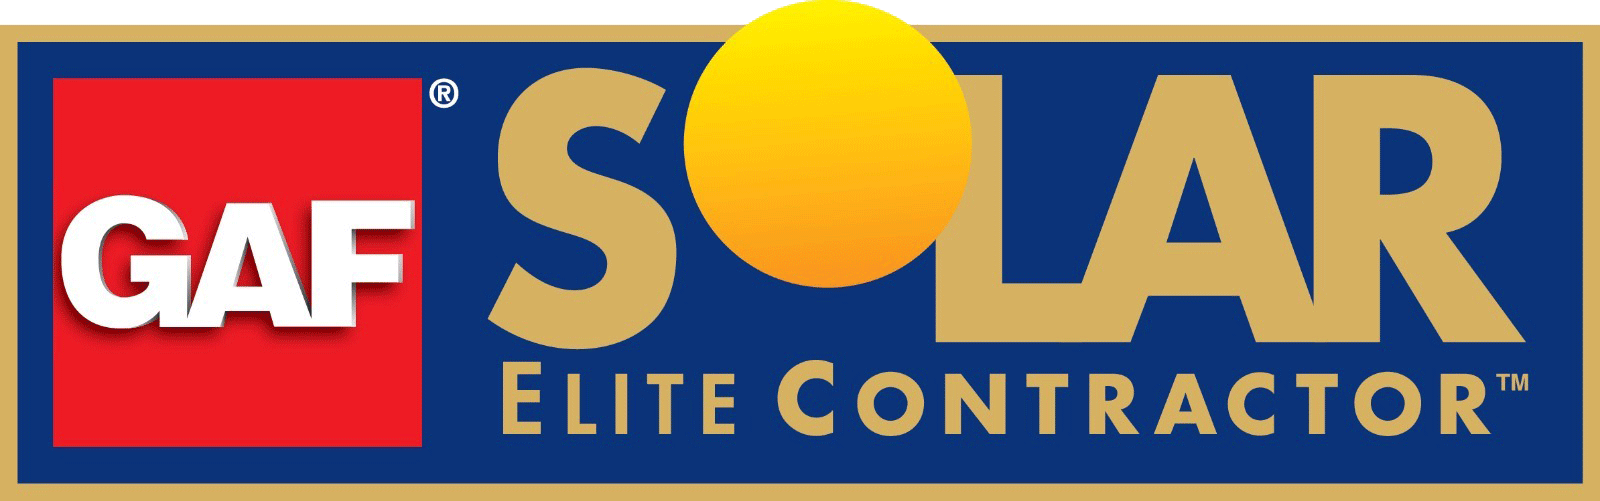 GAF Solar Elite Contractor